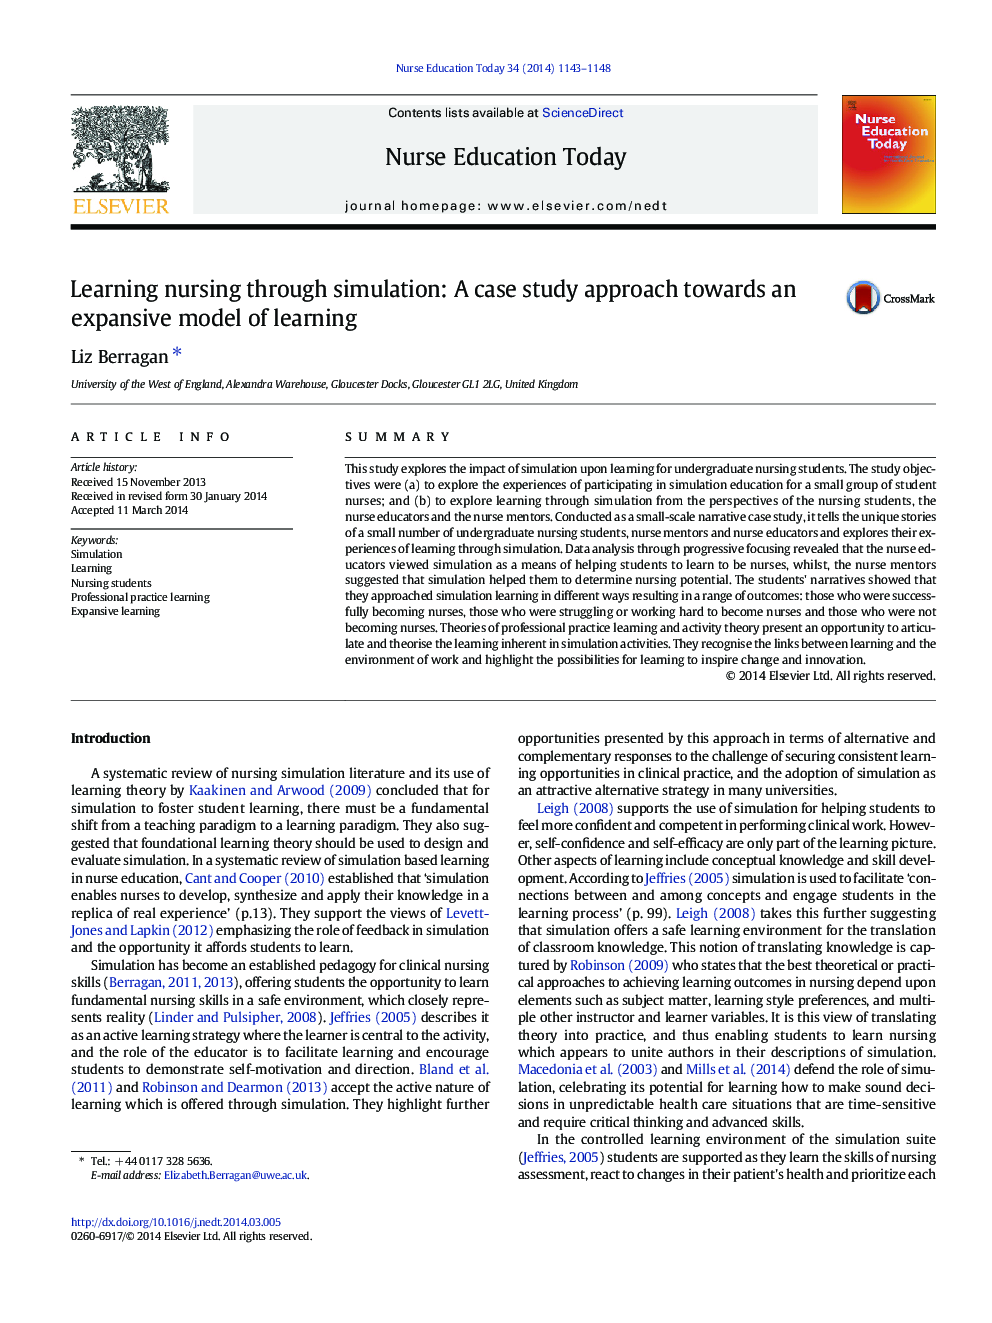 آموزش پرستاری از طریق شبیه سازی: یک رویکرد مطالعه موردی نسبت به یک مدل گسترده ای از یادگیری 